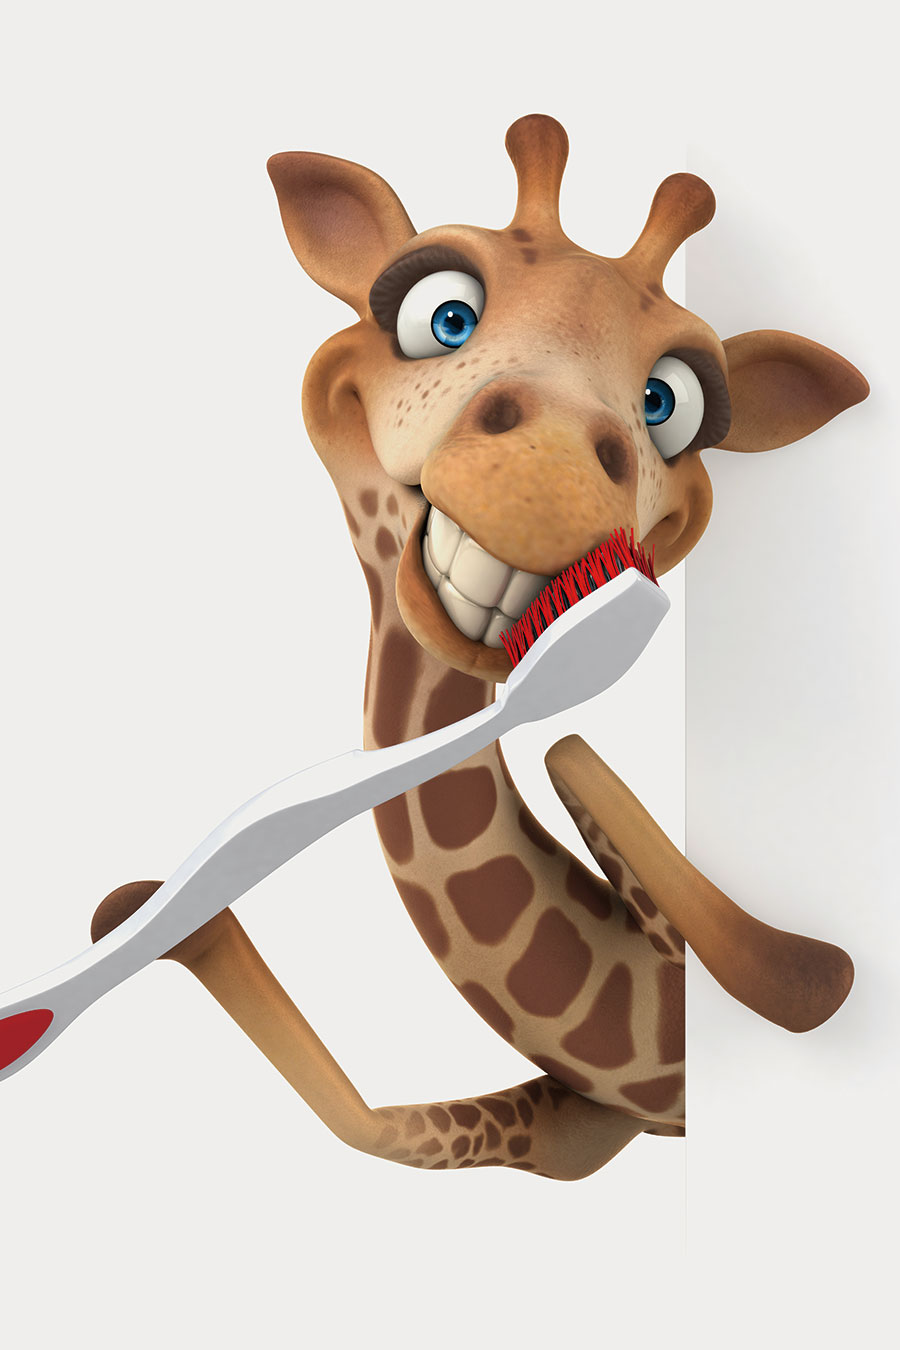 可爱的动物素材: 刷牙的长颈鹿